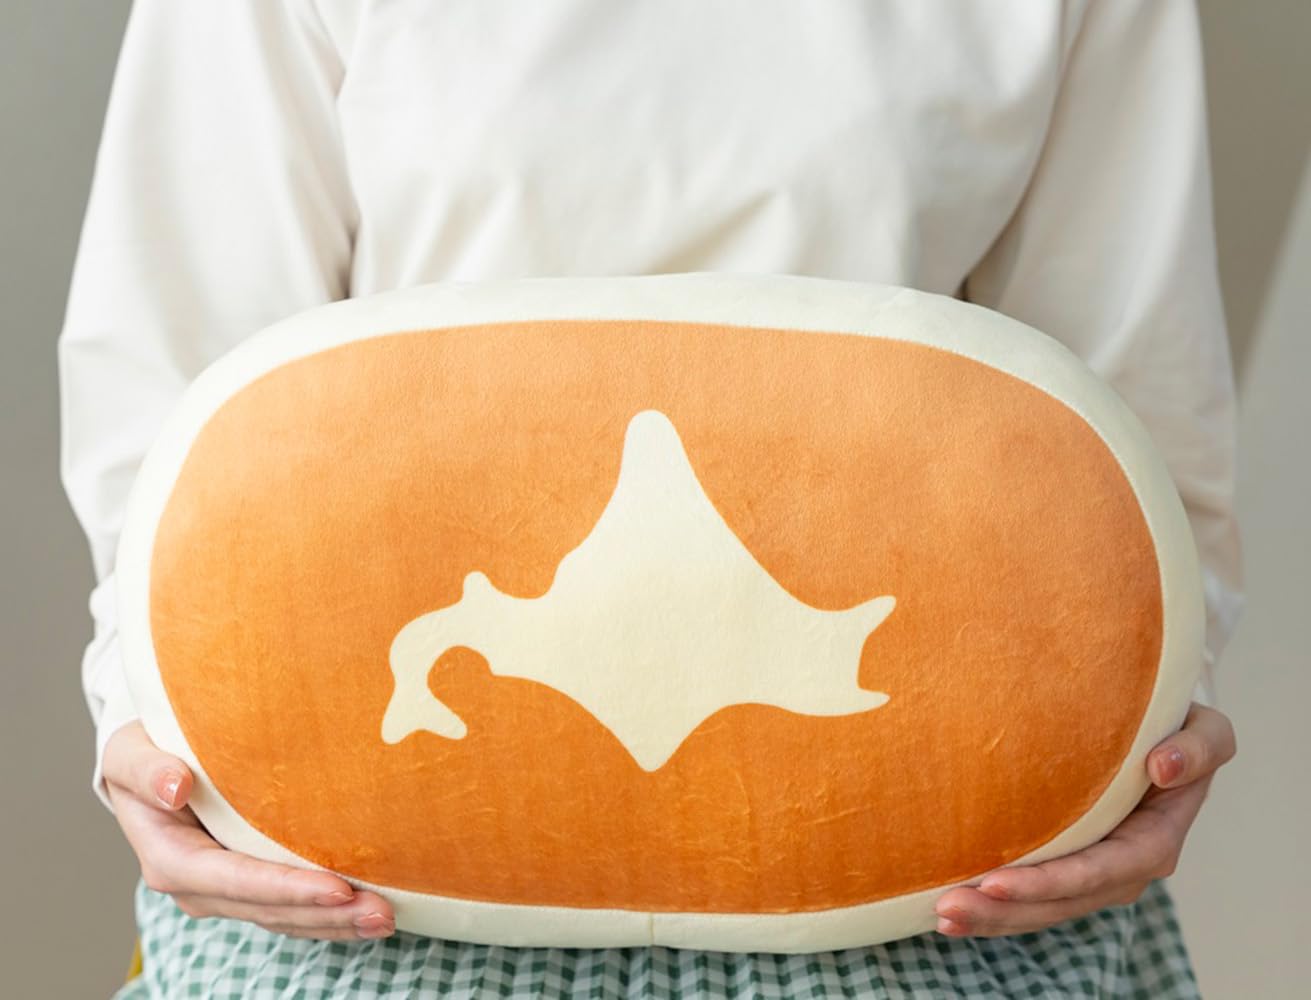 【新品】1週間以内発送 北海道チーズ蒸しケーキFAN BOO